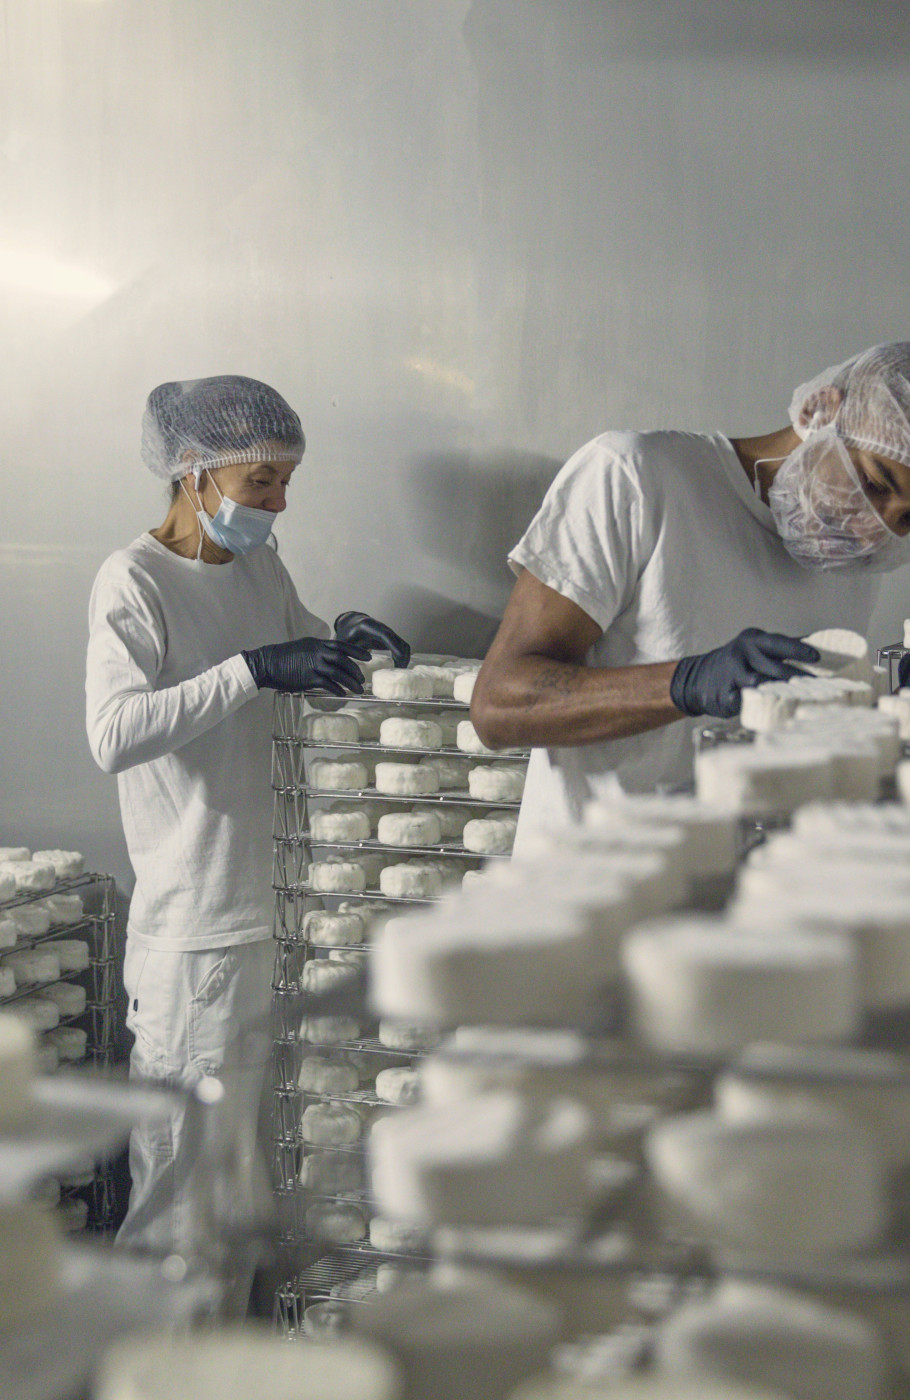 Ein Mann und eine Frau in Hygieneanzügen mit Gesichtsmasken und Hauben, arbeiten in einem Kühlraum mit Regalen voller weissem Käse